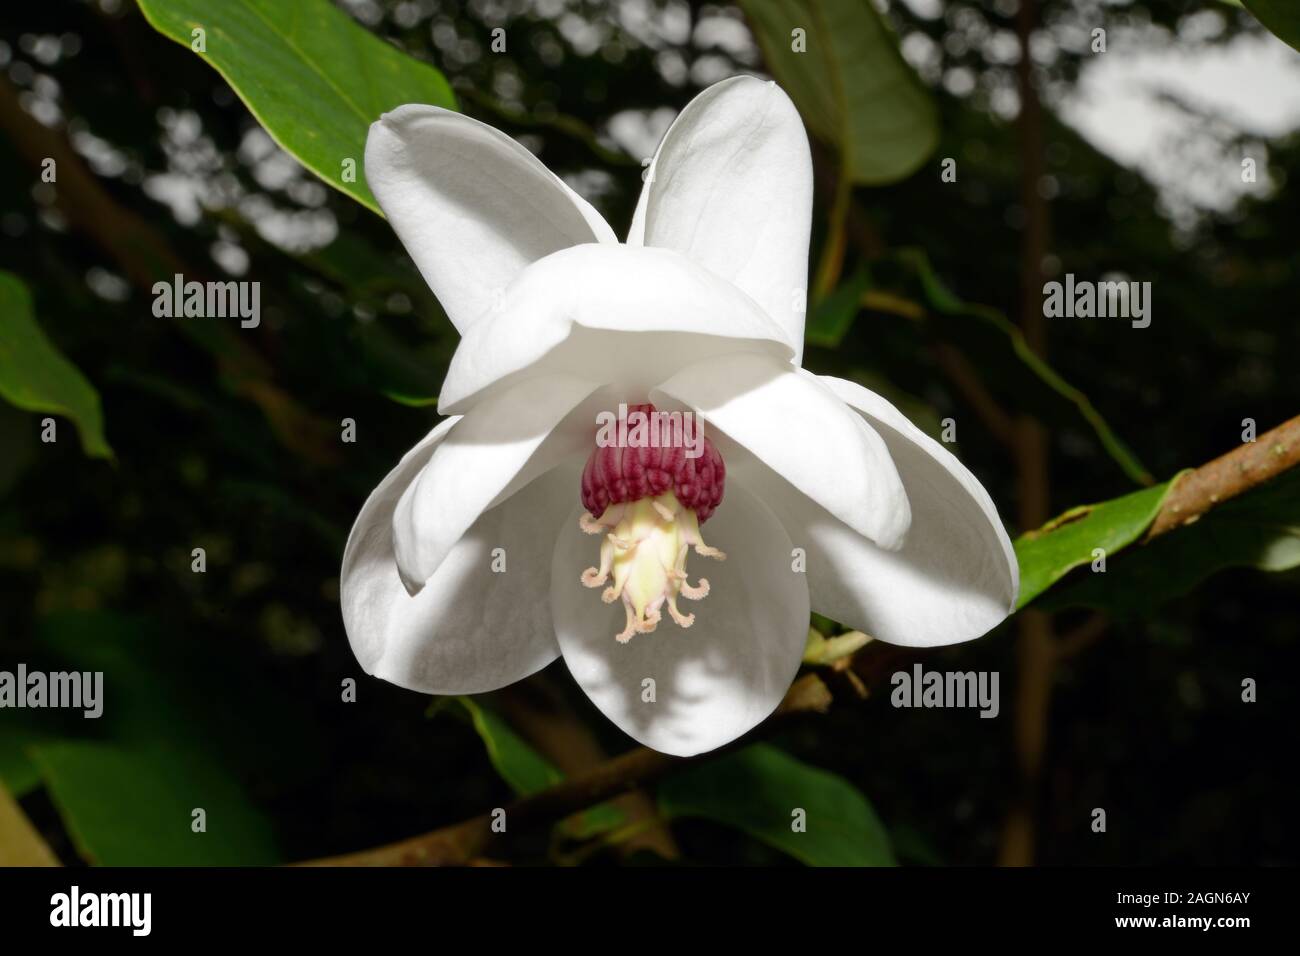 Magnolia sieboldii (Siebold della magnolia) è nativo di Asia orientale tra cui la Cina, il Giappone e la Corea crescente in subtropicale / tropicali Foreste montane. Foto Stock